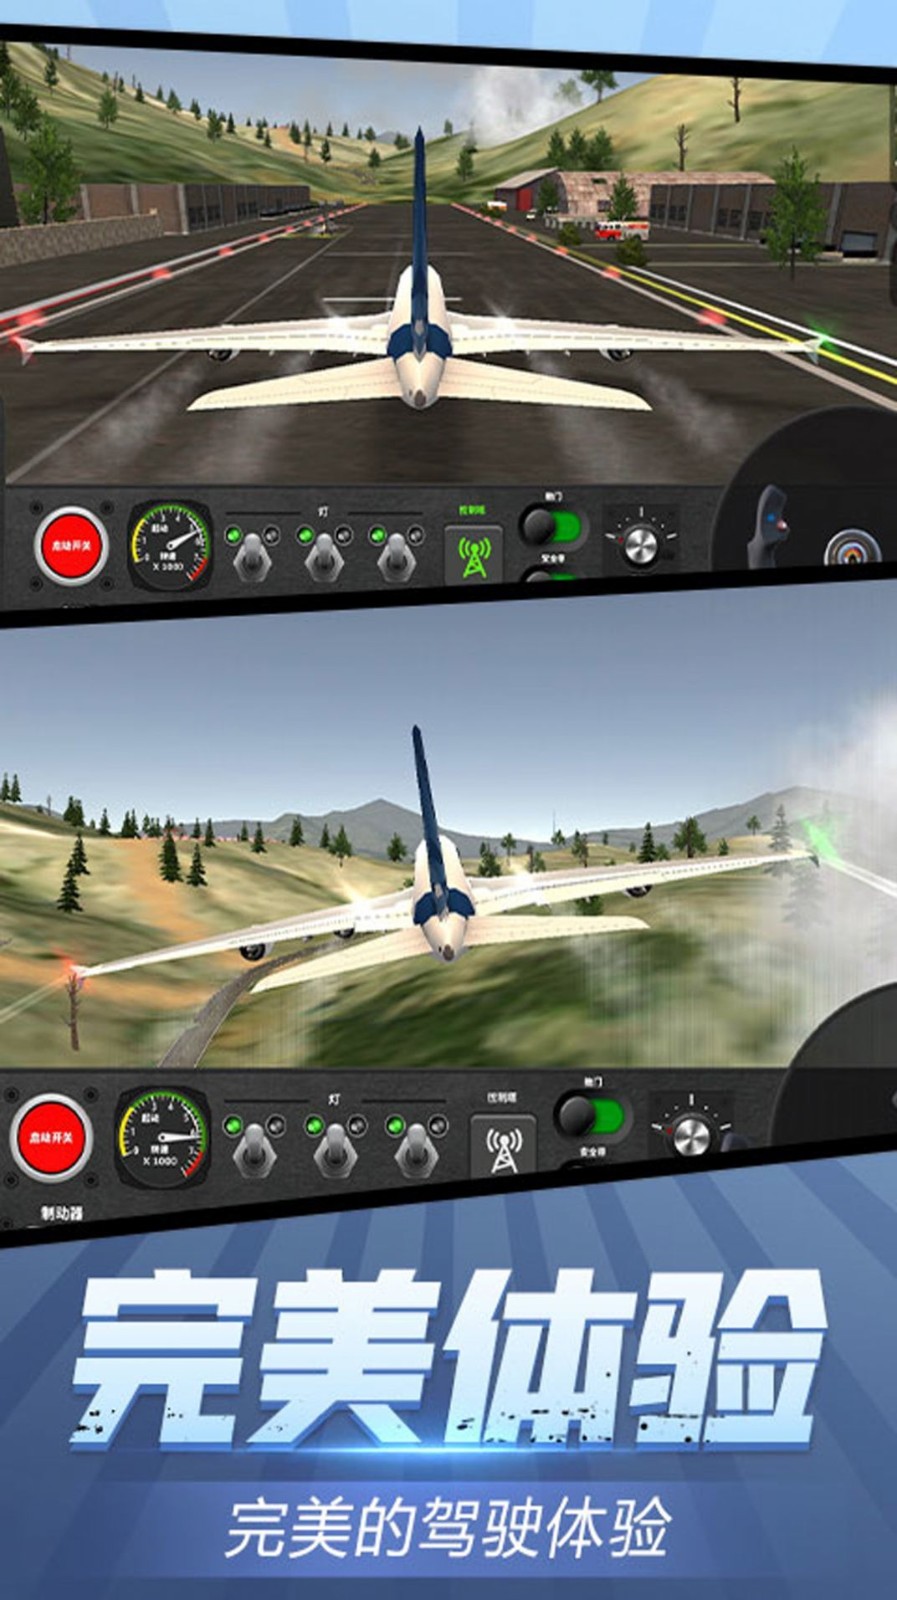 安全飞行模拟器游戏下载